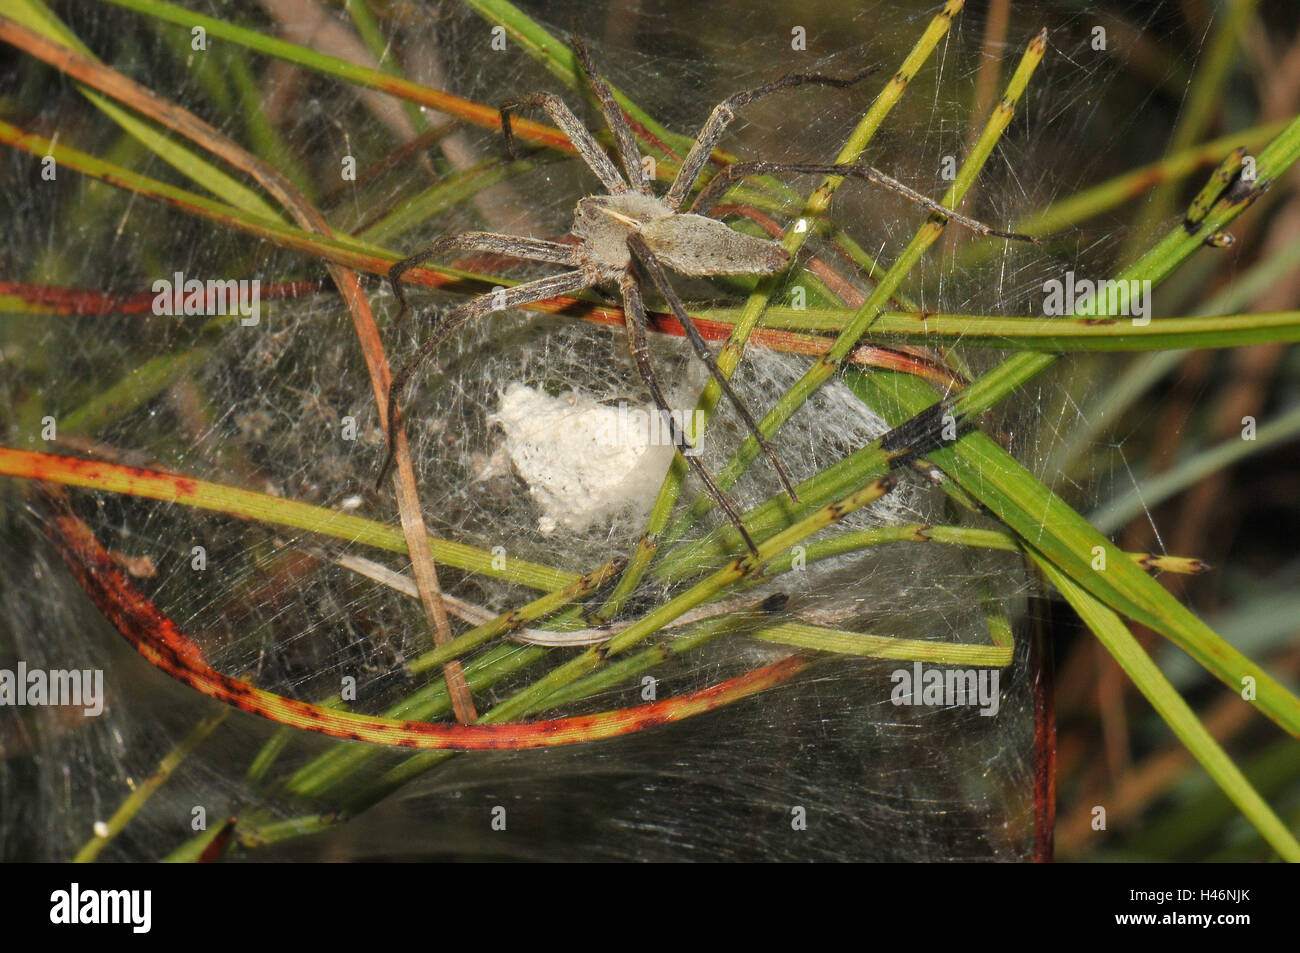 Elenco spider segna il suo bozzolo, Foto Stock